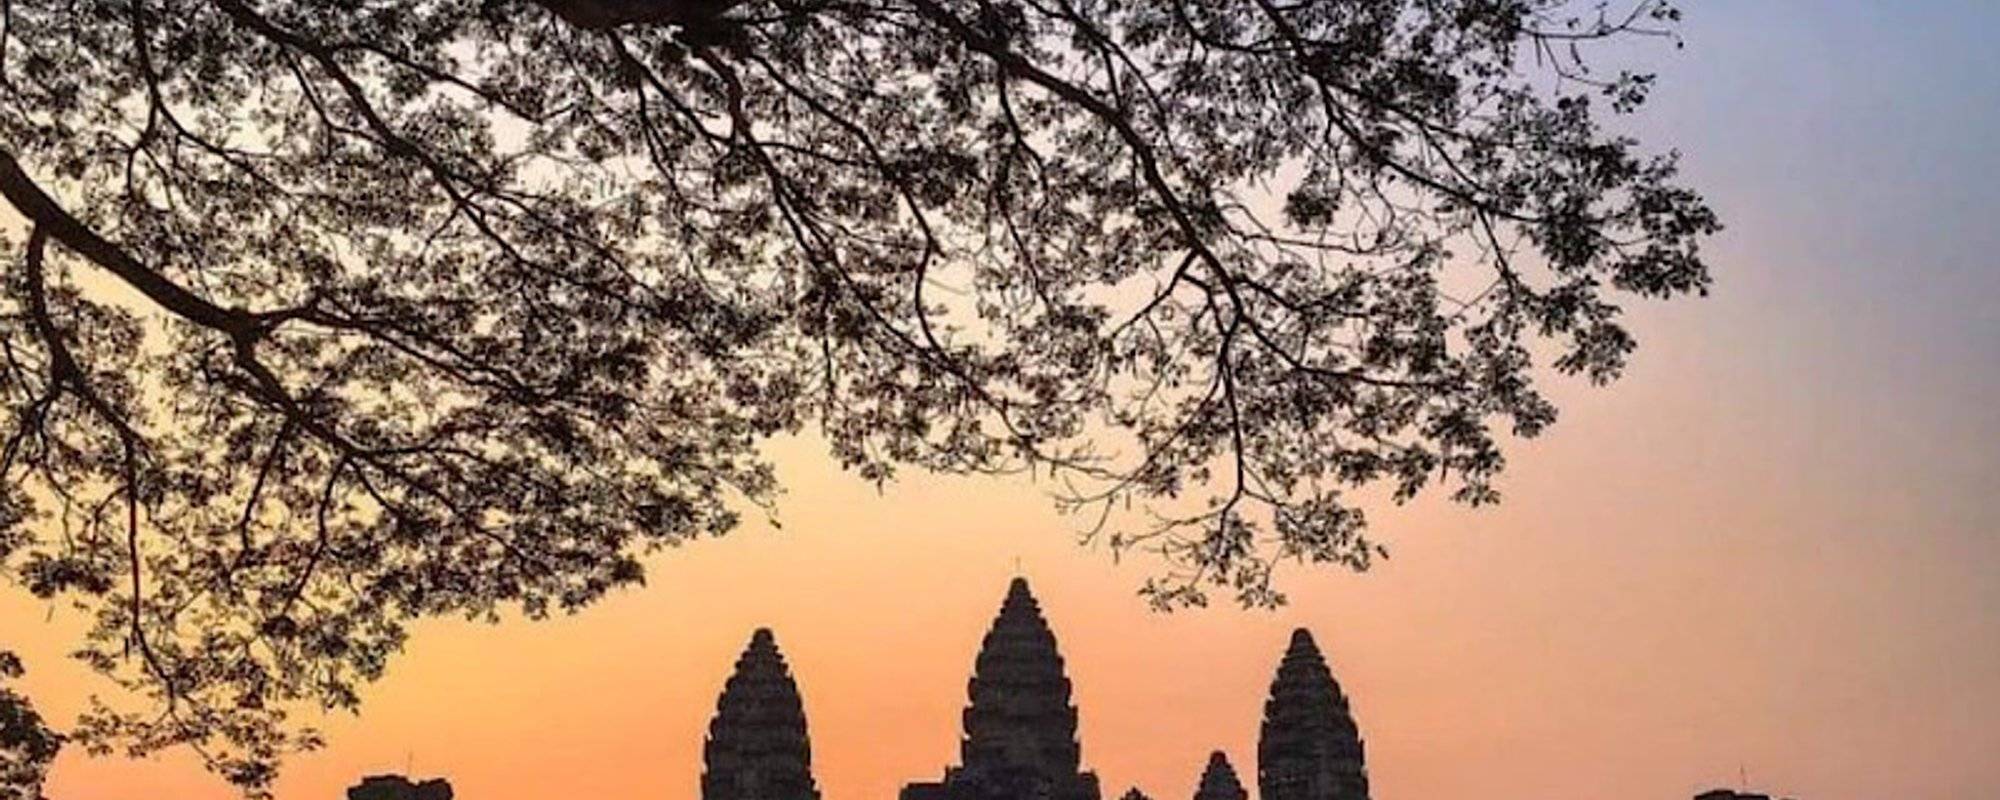 📷 My Old Photos Of Angkor Wat, Cambodia 🛕